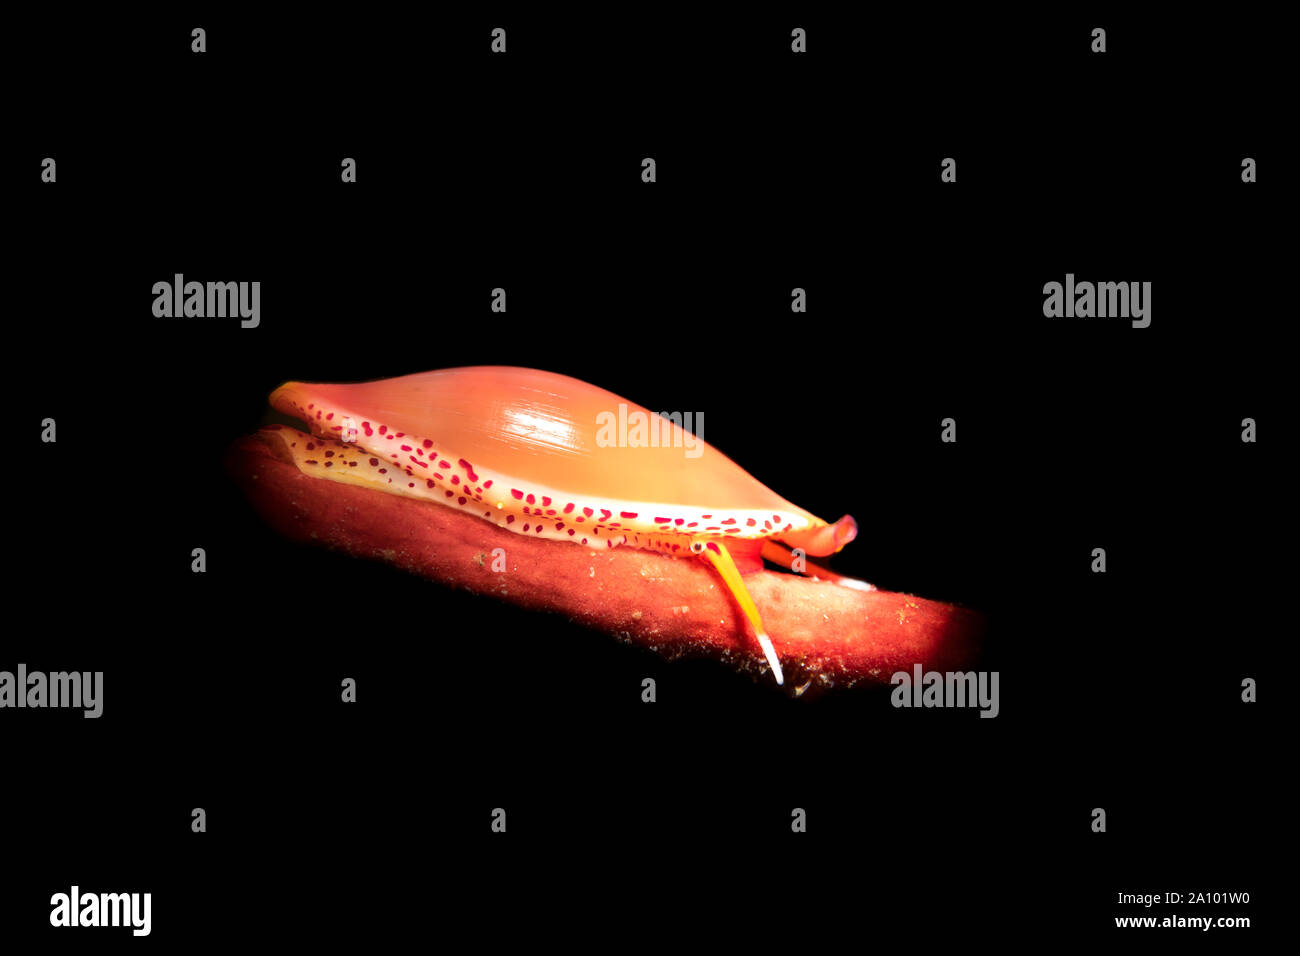 Un pequeño caracol simnia rastrea en su host, gorgonias rojas fan de mar, lo que permite que el caracol para esconderse de los depredadores. Foto de stock